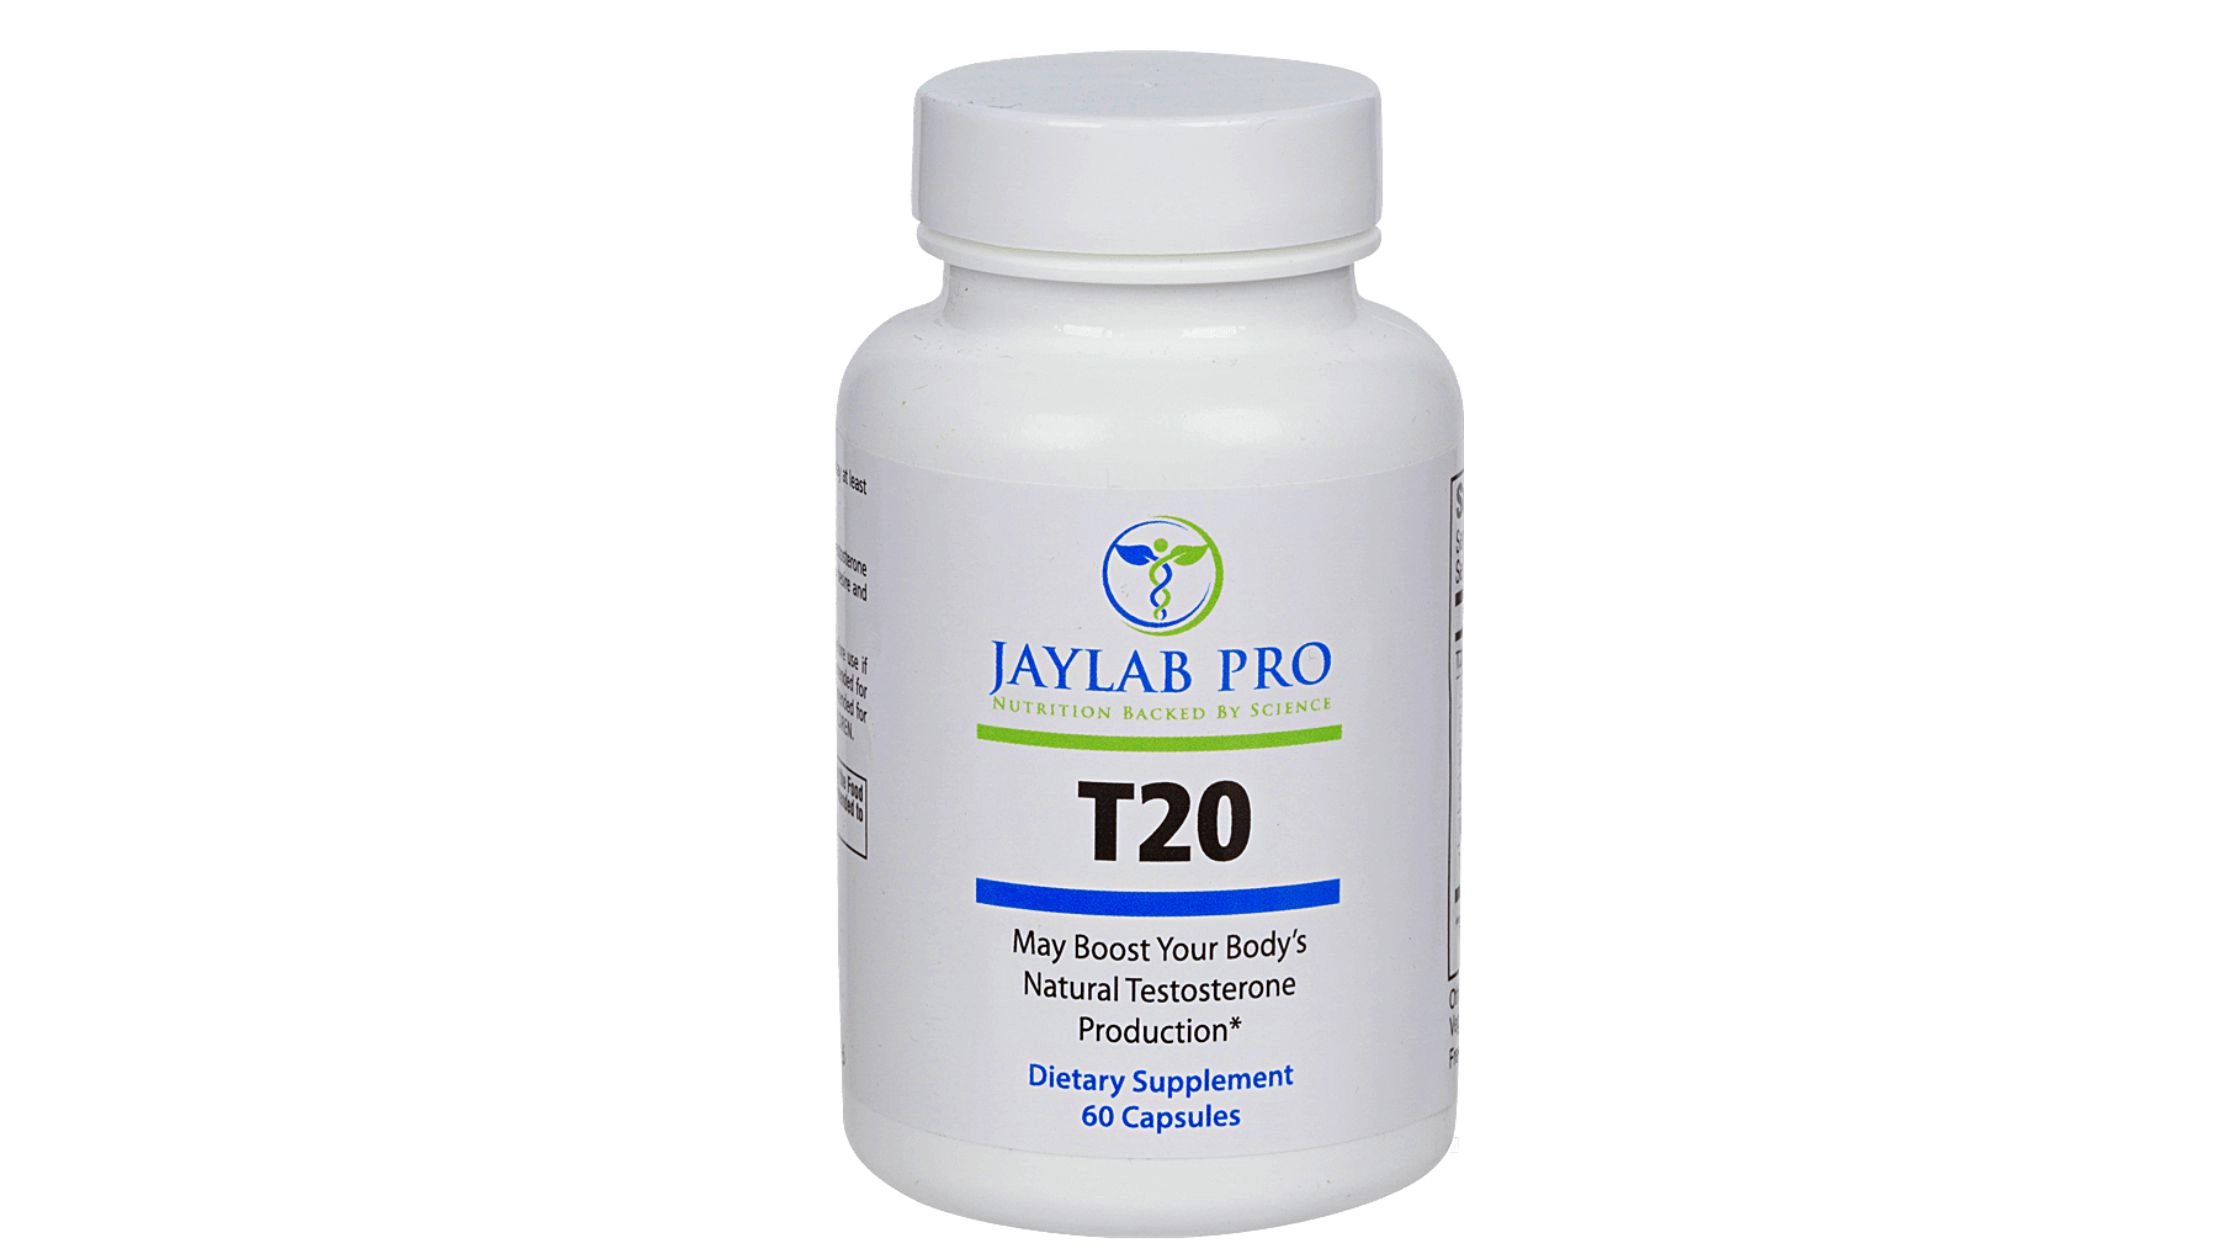 Jaylab Pro’s T20 review (NZ)